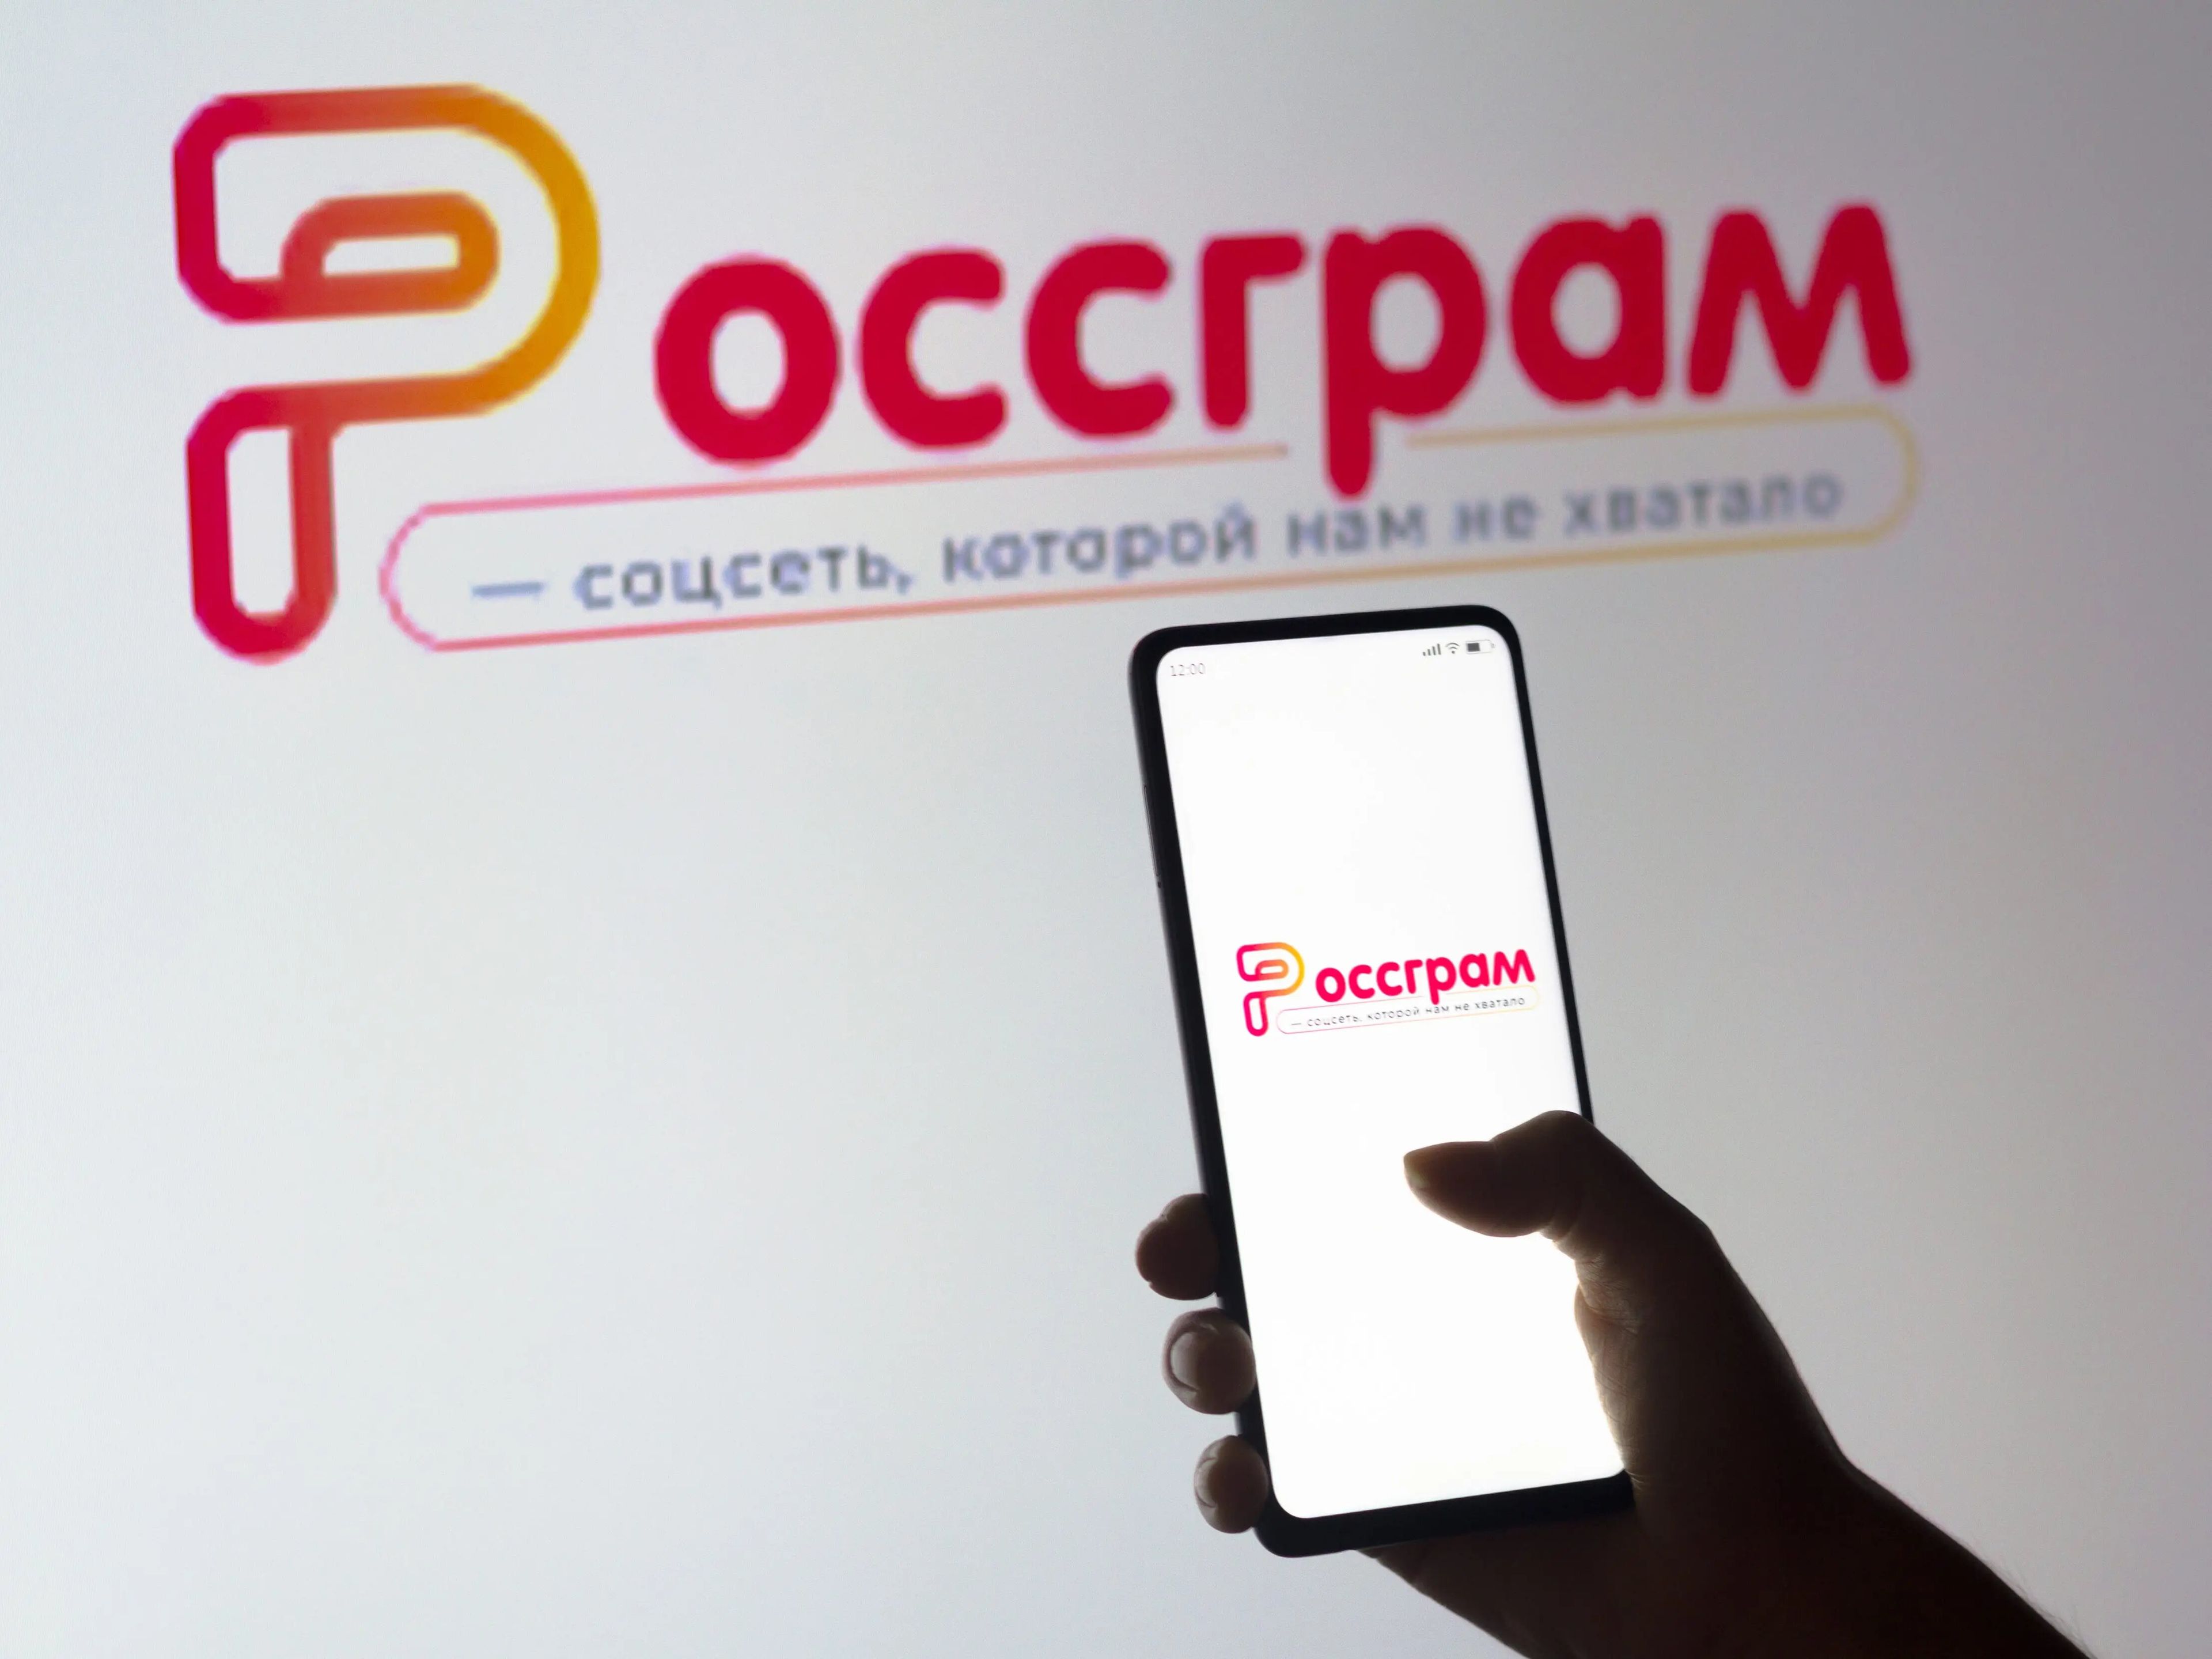 El logotipo de una nueva aplicación rusa de Instagram, Rossgram, que se lanzará el 28 de marzo ante inversores, patrocinadores y medios de comunicación.